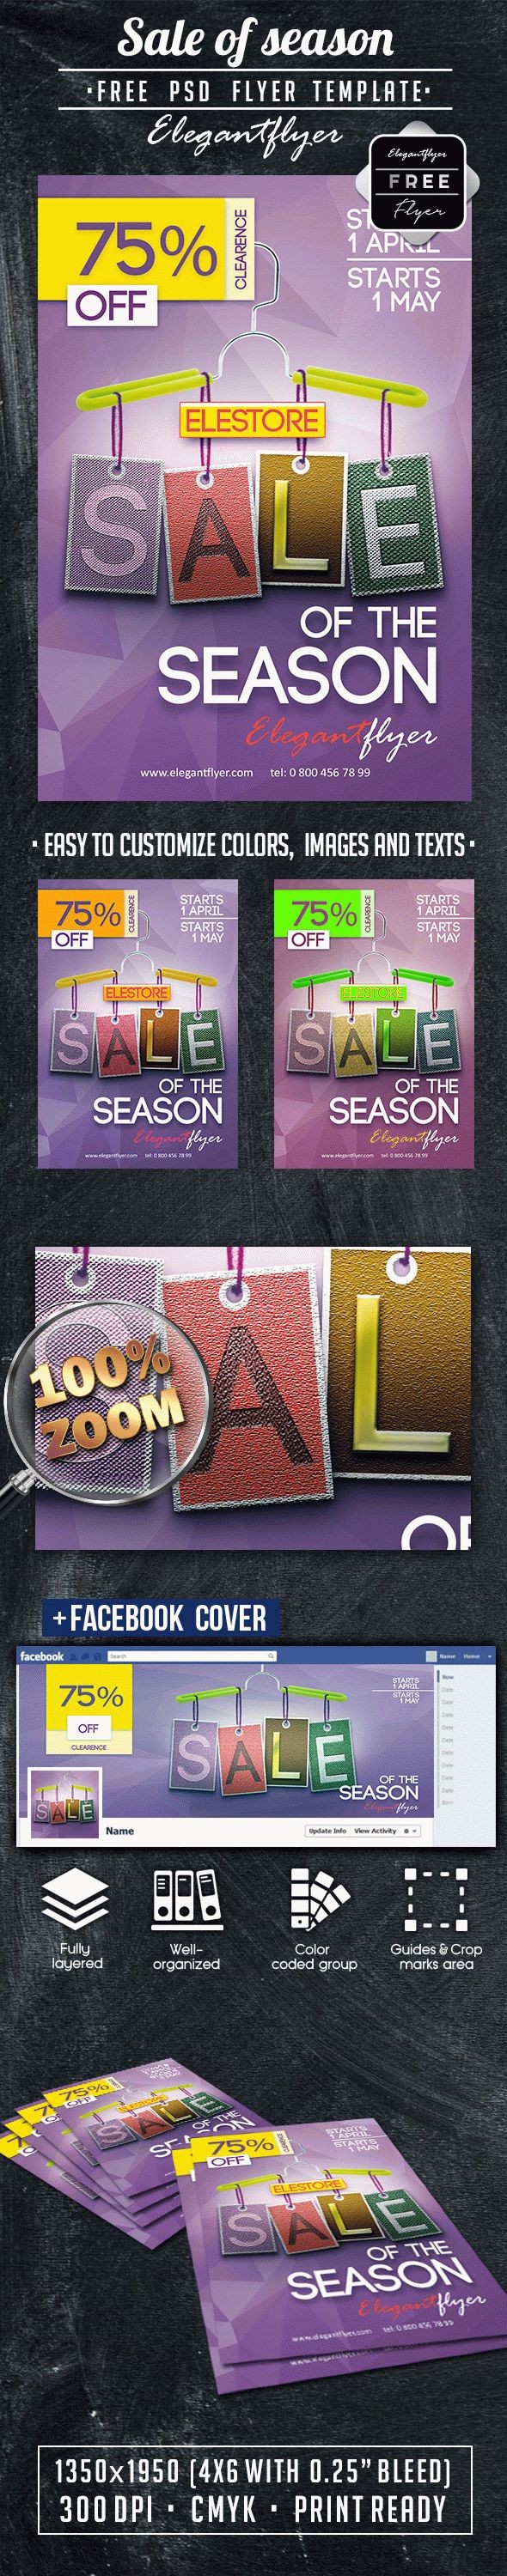 Sale of season by ElegantFlyer